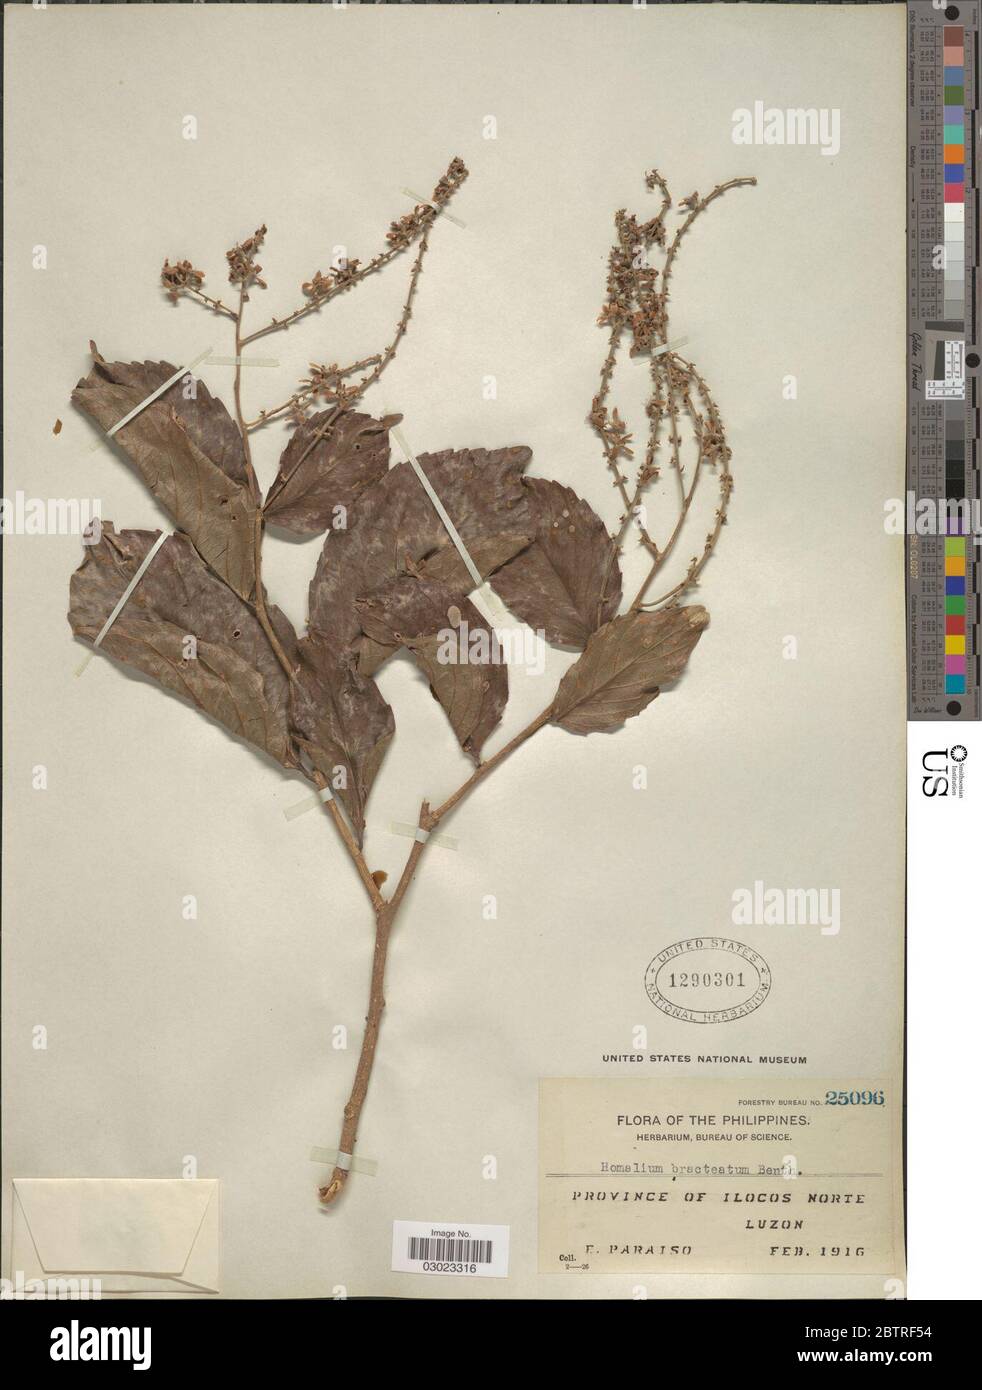 Homalium bracteatum Benth. Stock Photo